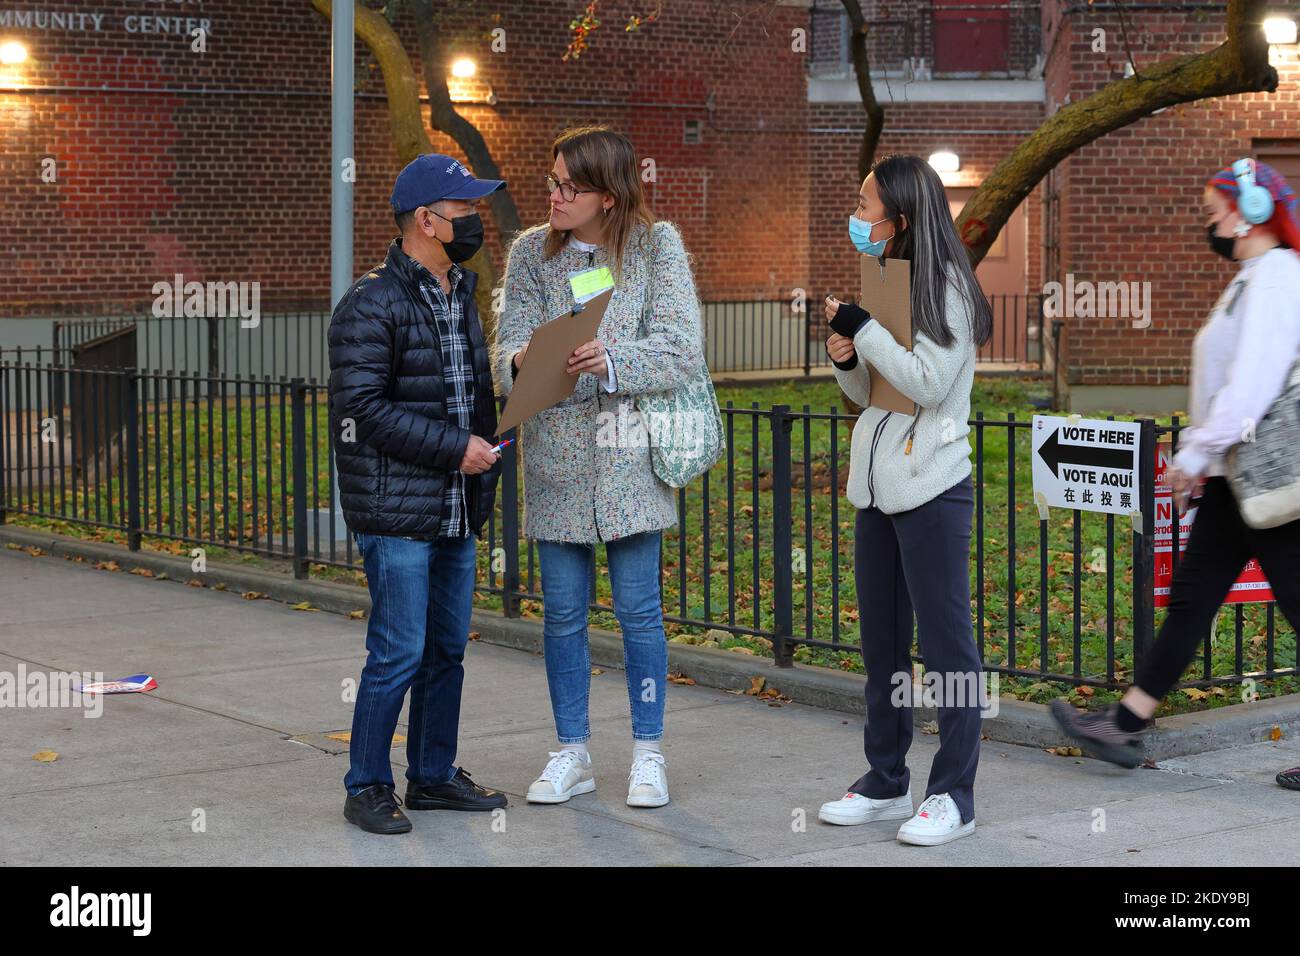 Les volontaires de la Défense juridique et de l'éducation d'Amérique asiatique mènent un sondage de sortie à l'extérieur d'un bureau de vote de Chinatown de Manhattan, à New York, au 8 novembre 2022. Banque D'Images